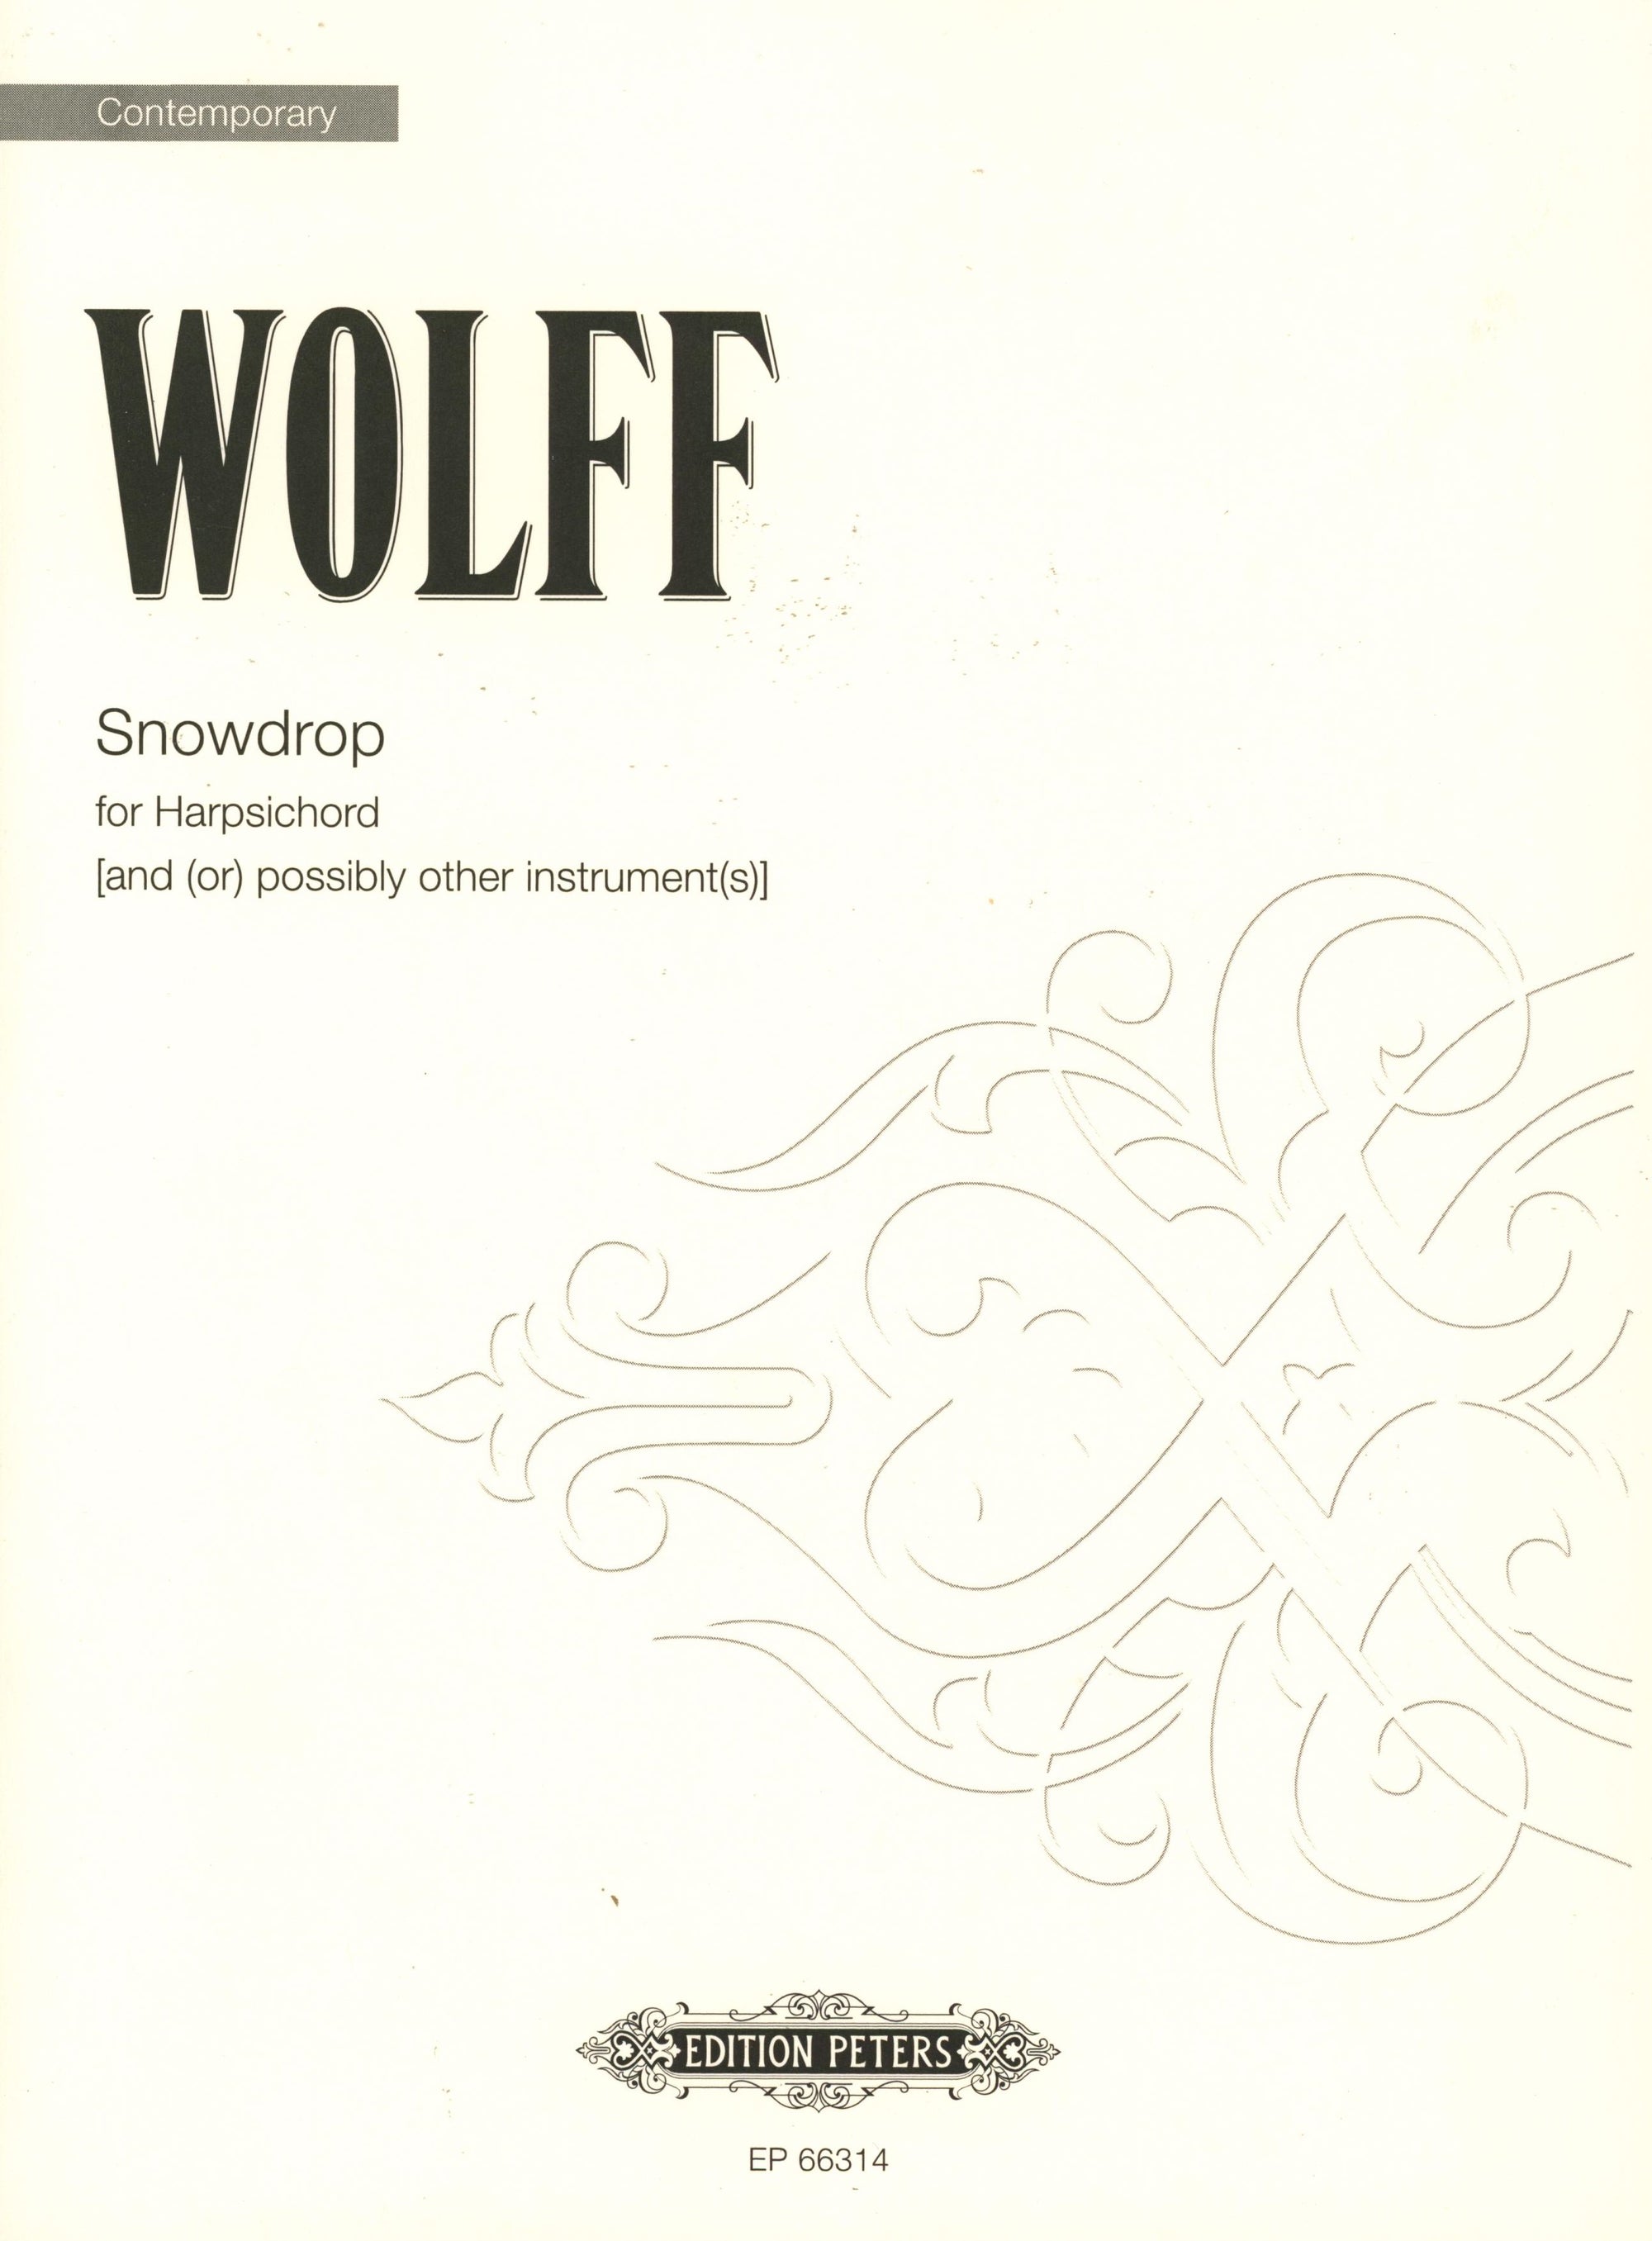 Wolff: Snowdrop